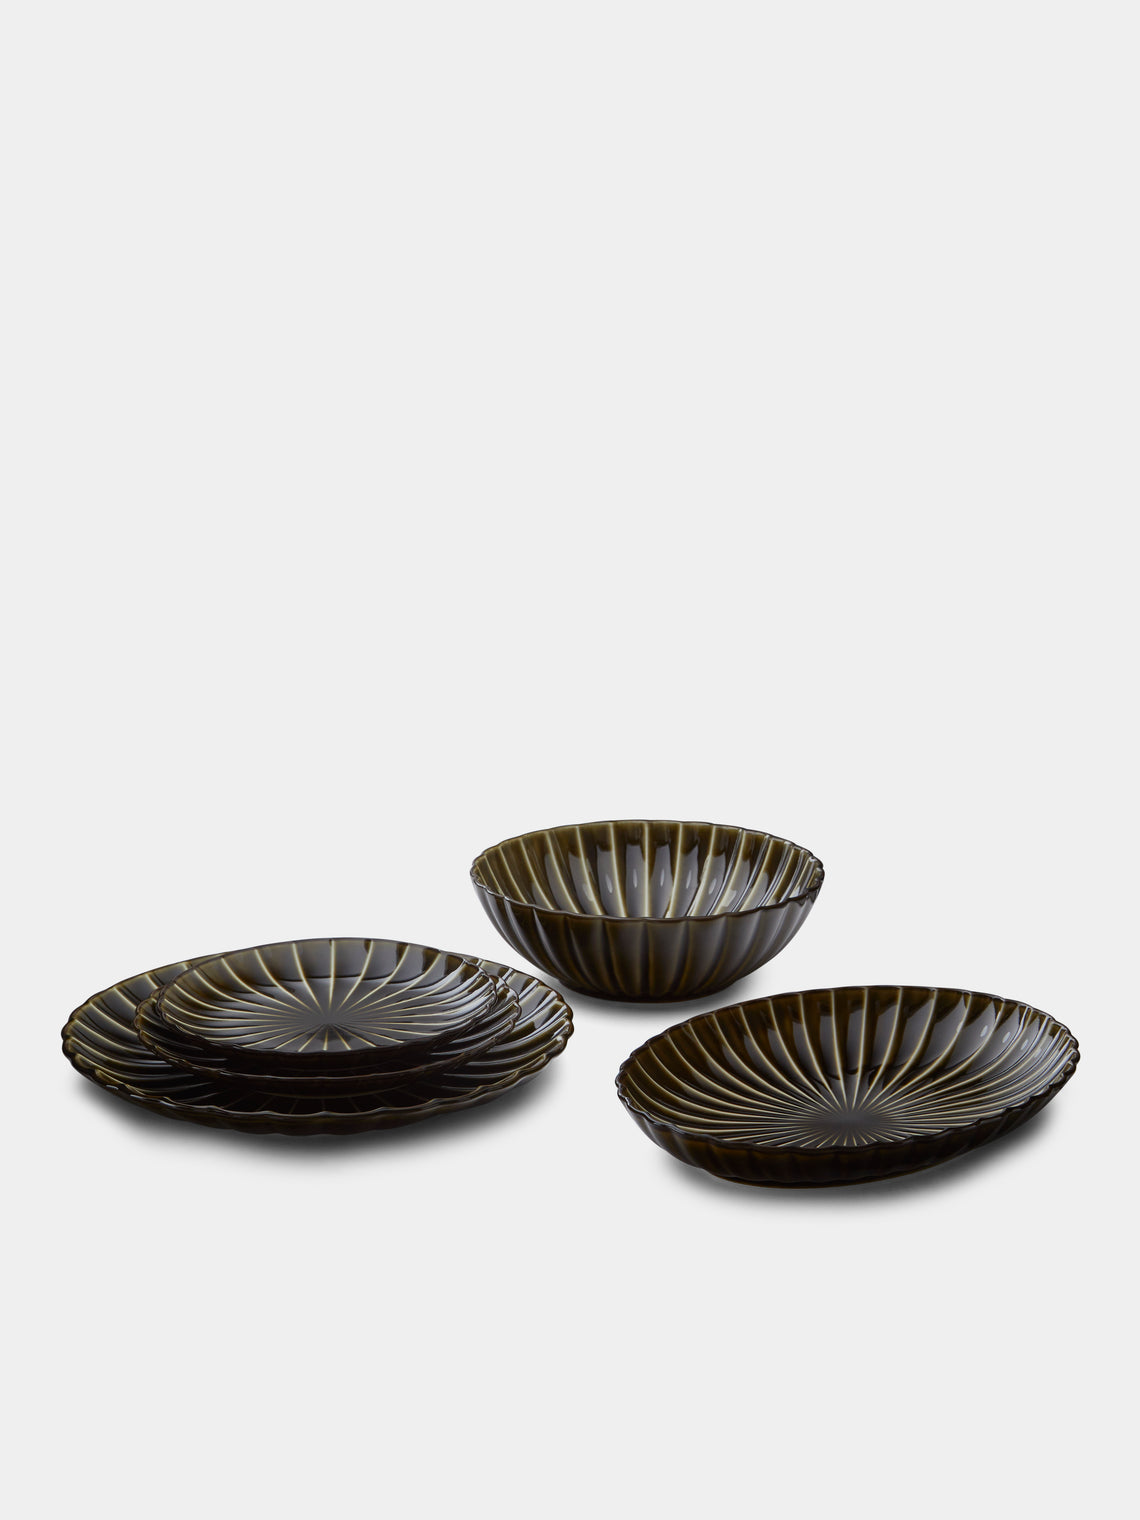 Kaneko Kohyo - Giyaman Urushi Ceramic Dessert Plates (Set of 4) - Green - ABASK